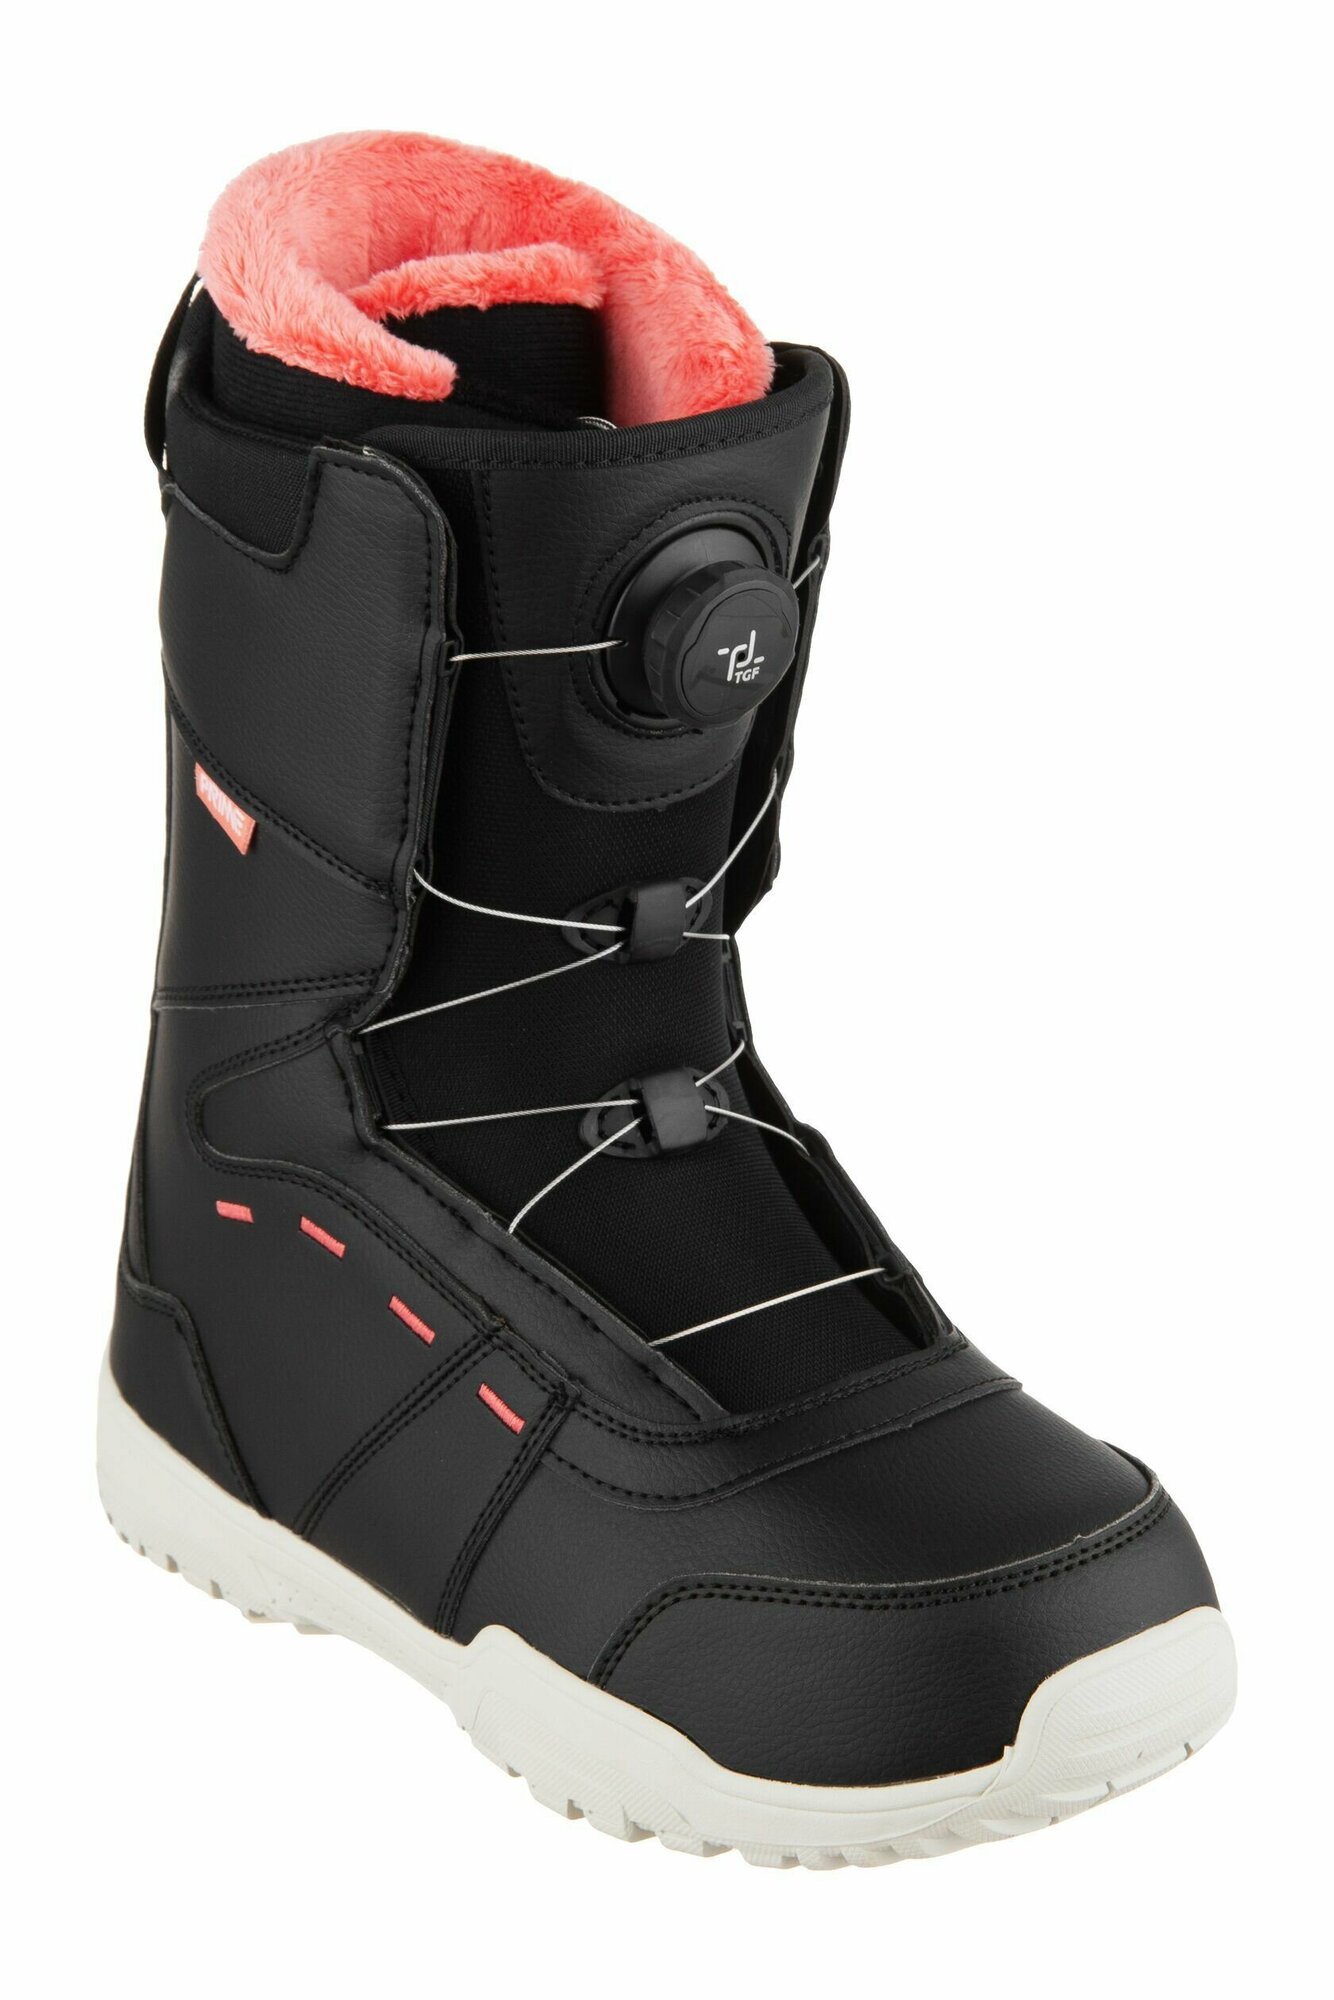 Ботинки сноубордические PRIME COOL-C1 TGF Black-Red (быстрая шнуровка) (35 RU / 23 cm)